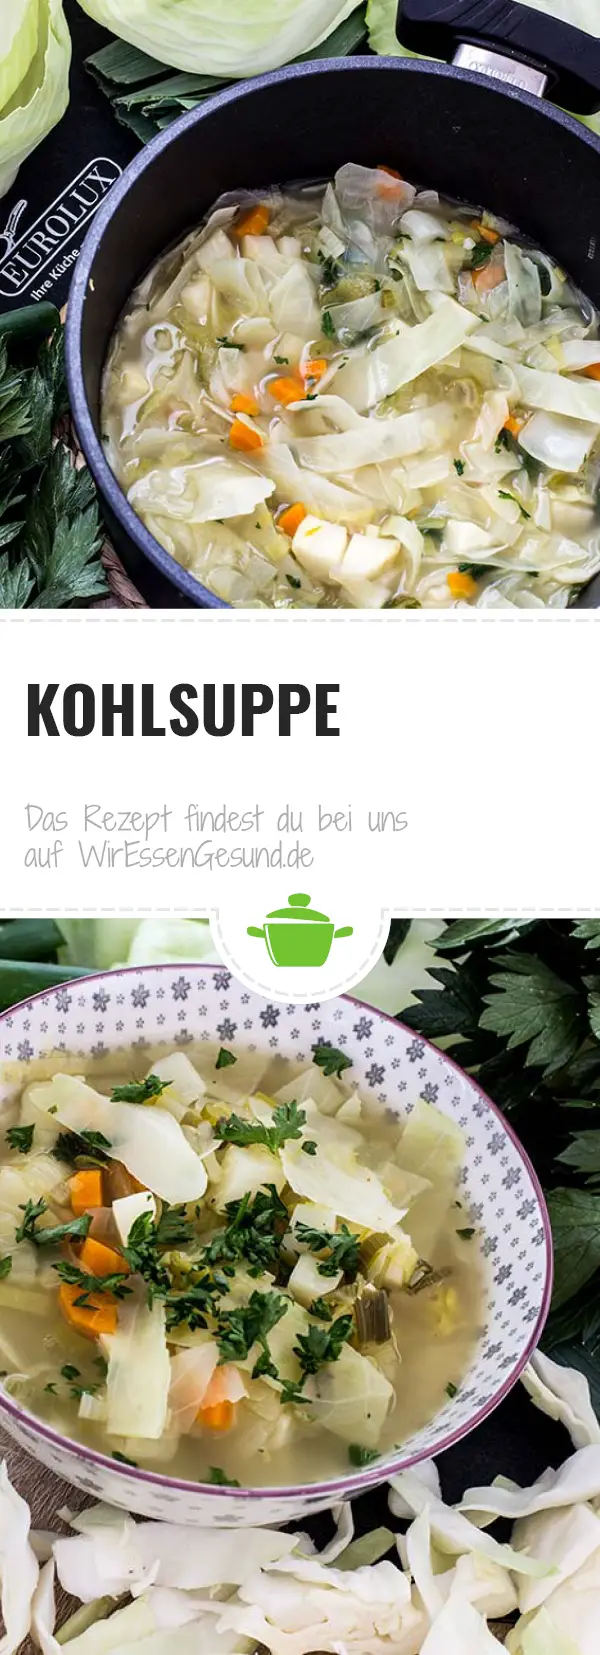 Traditionelle Kohlsuppe - Rezept auf WirEssenGesund .de